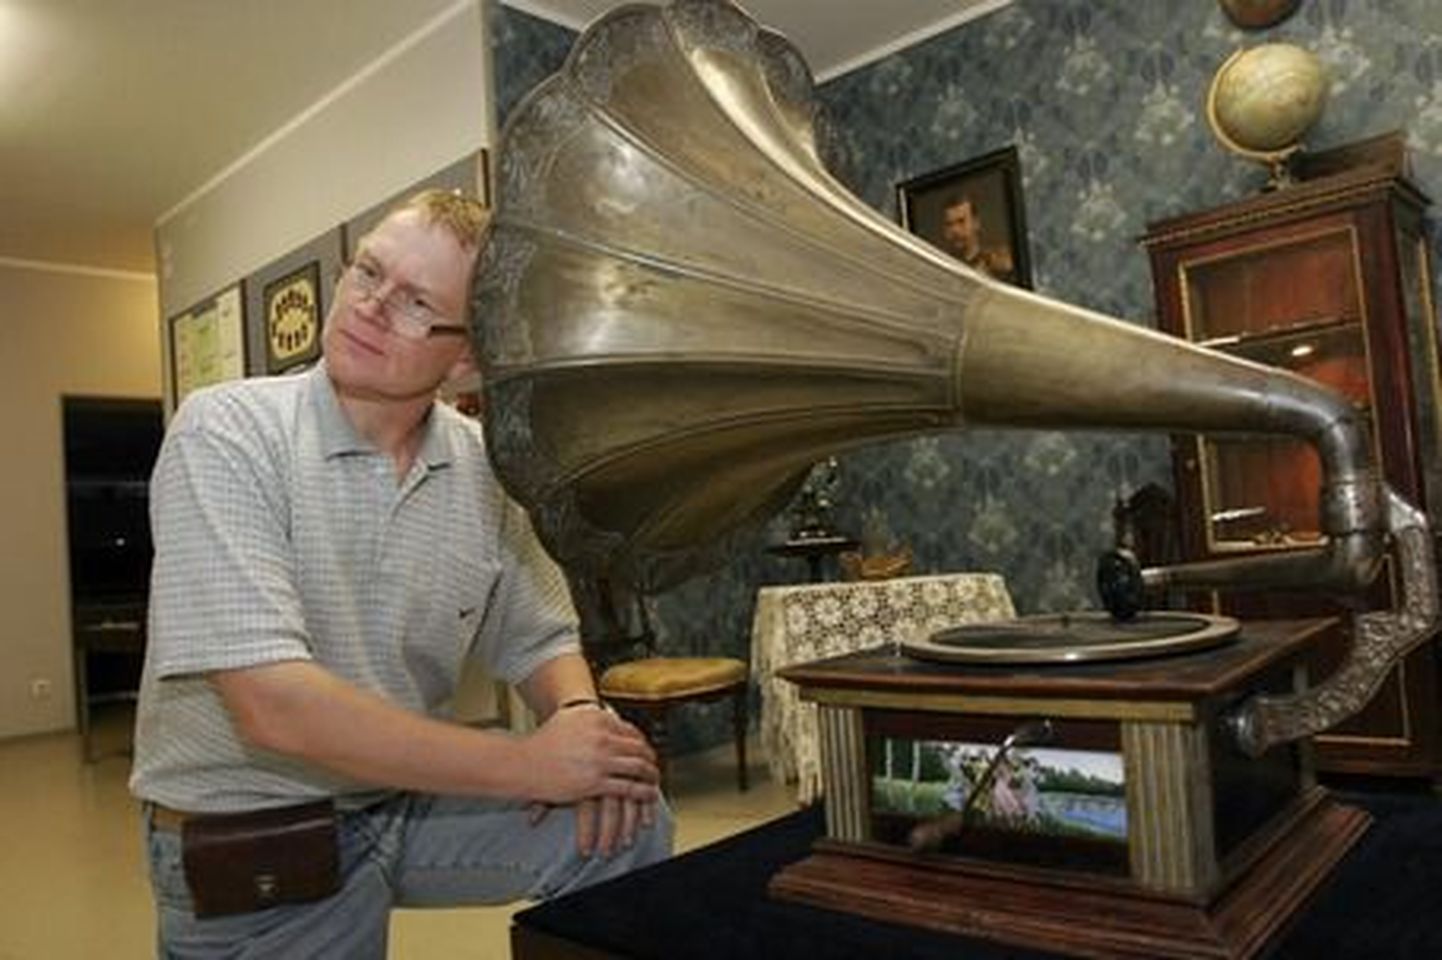 Nagu rikkis grammofoniplaadilt jõuavad Viljandi muuseumi direktori Jaak Pihlaku kõrvu kinnitused, et raha ei ole ja raha ei tule. Keerulistest aegadest hoolimata püüab muuseum siiski hakkama saada.